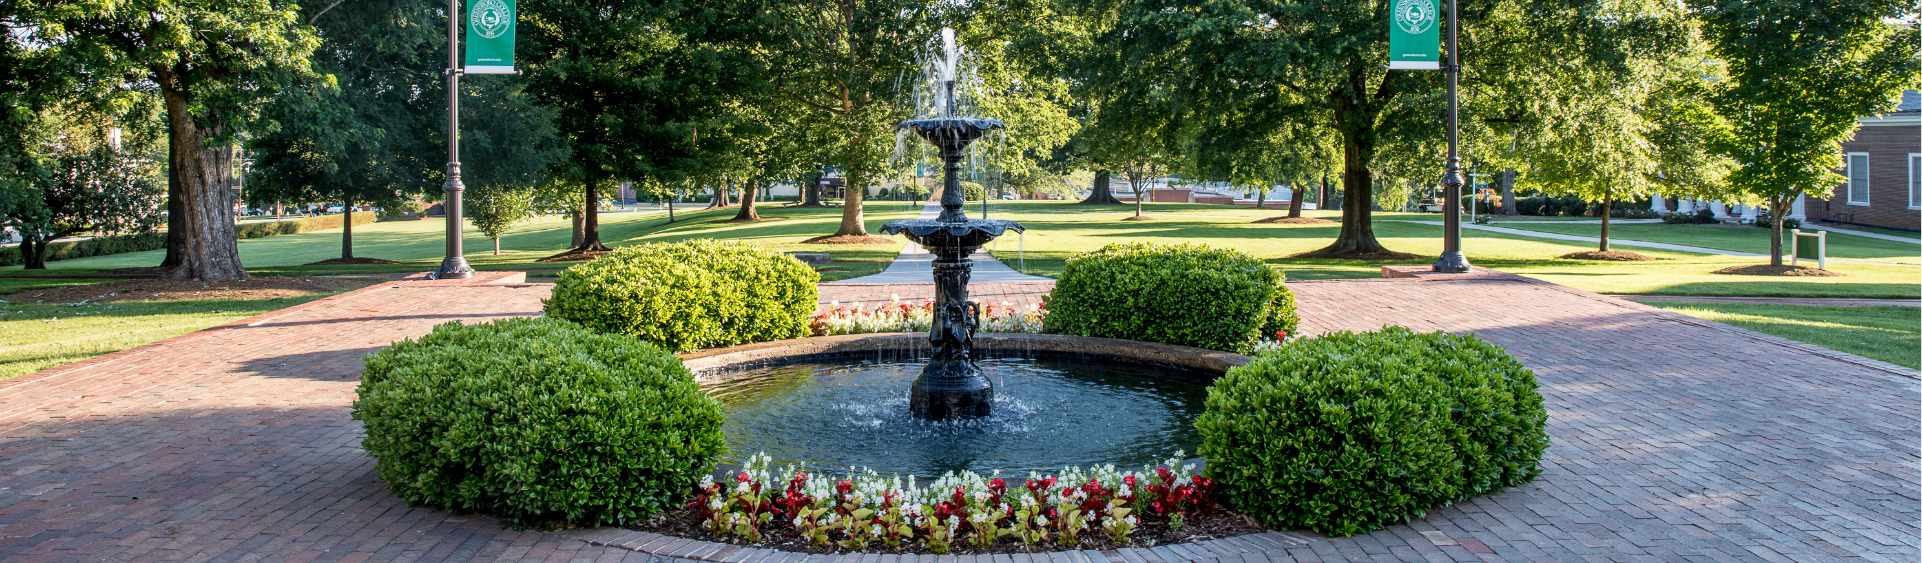 Greensboro College Quad Fountain Photo